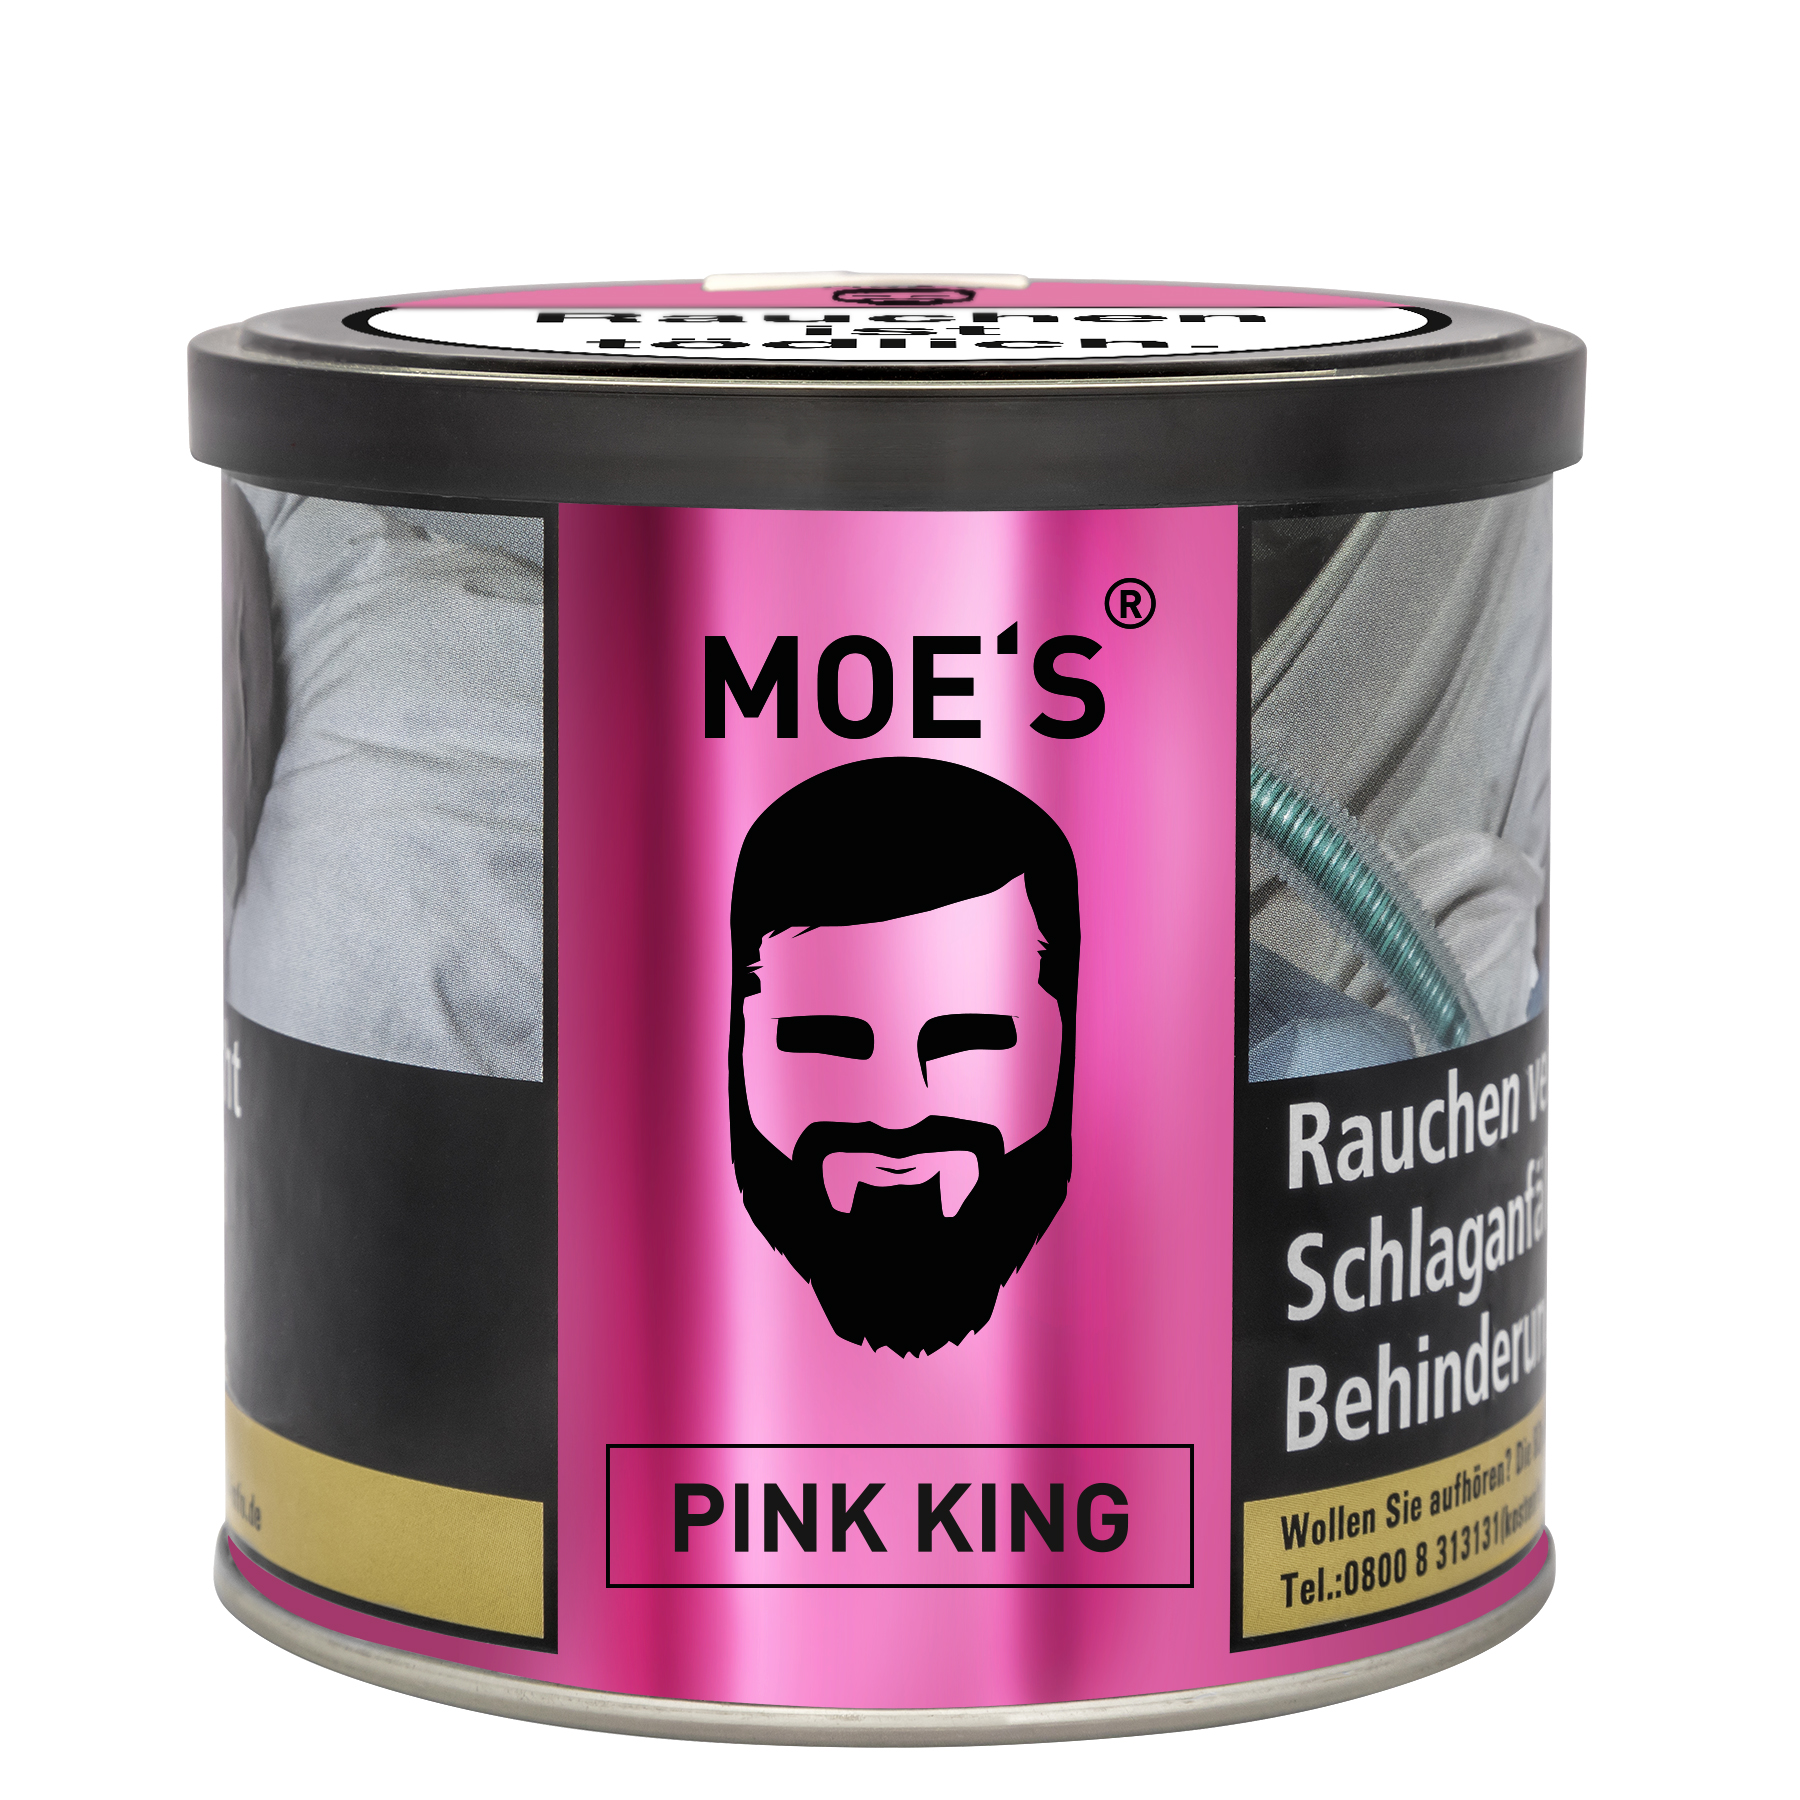 Moes Tobacco - Pink King